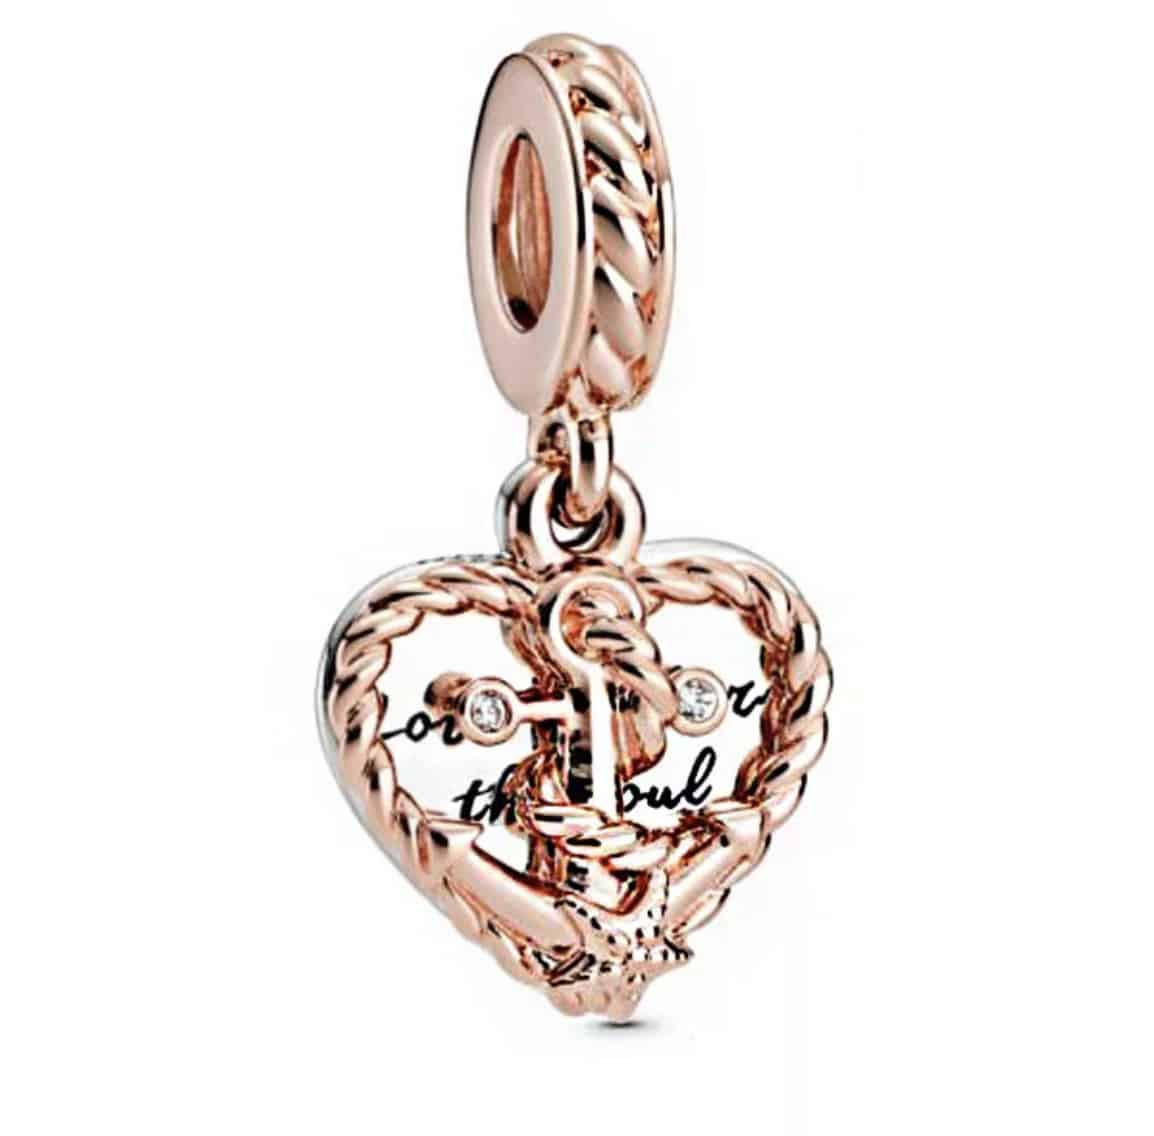 Product Afbeelding vooraanzicht van onze anker charm uit de geloof en geluk collectie. Deze prachtige charm is gemaakt van 925 sterling zilver met een laagje rose. De details van de anker zijn mooi verwerkt in een open hart.